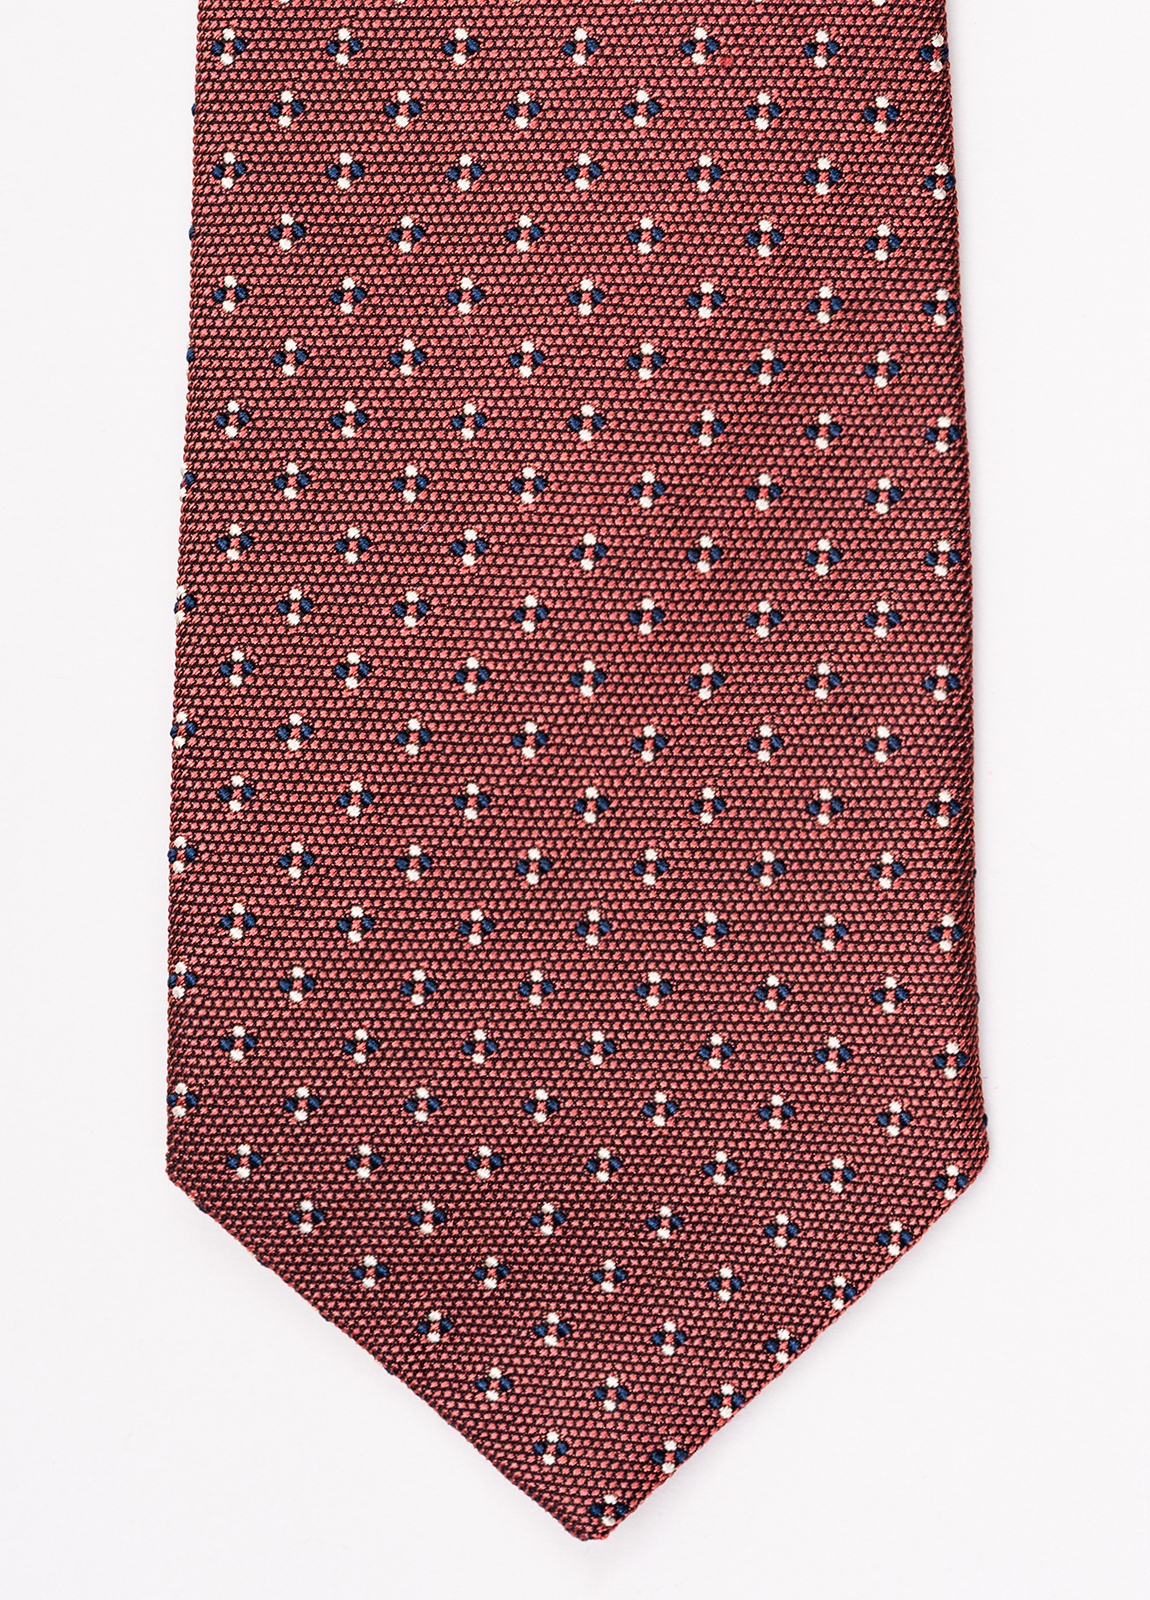 Corbata FUREST COLECCIÓN color teja con micro dibujo